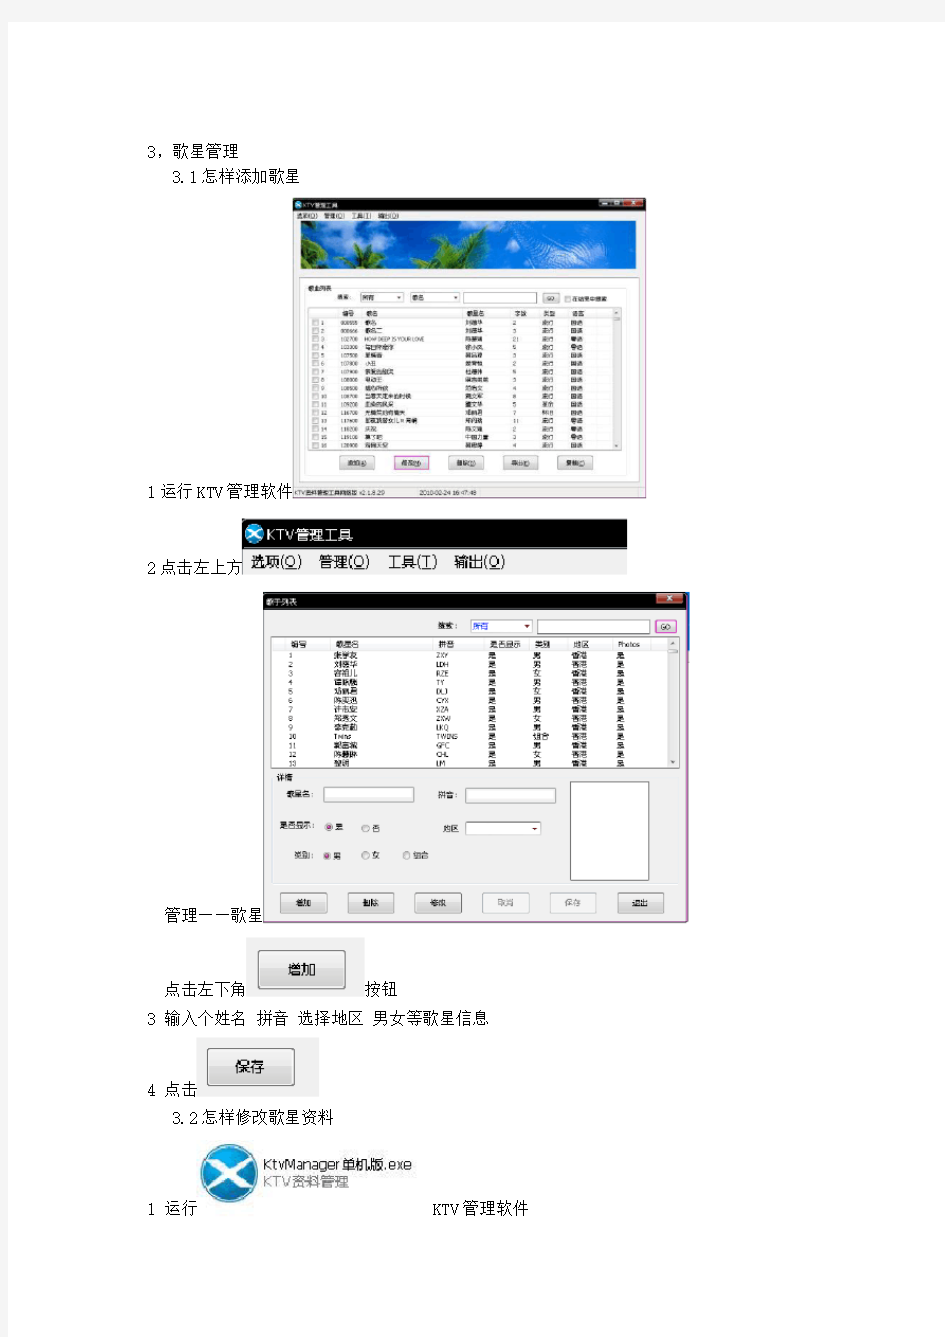 麦霸嵌入式点歌机管理软件使用手册